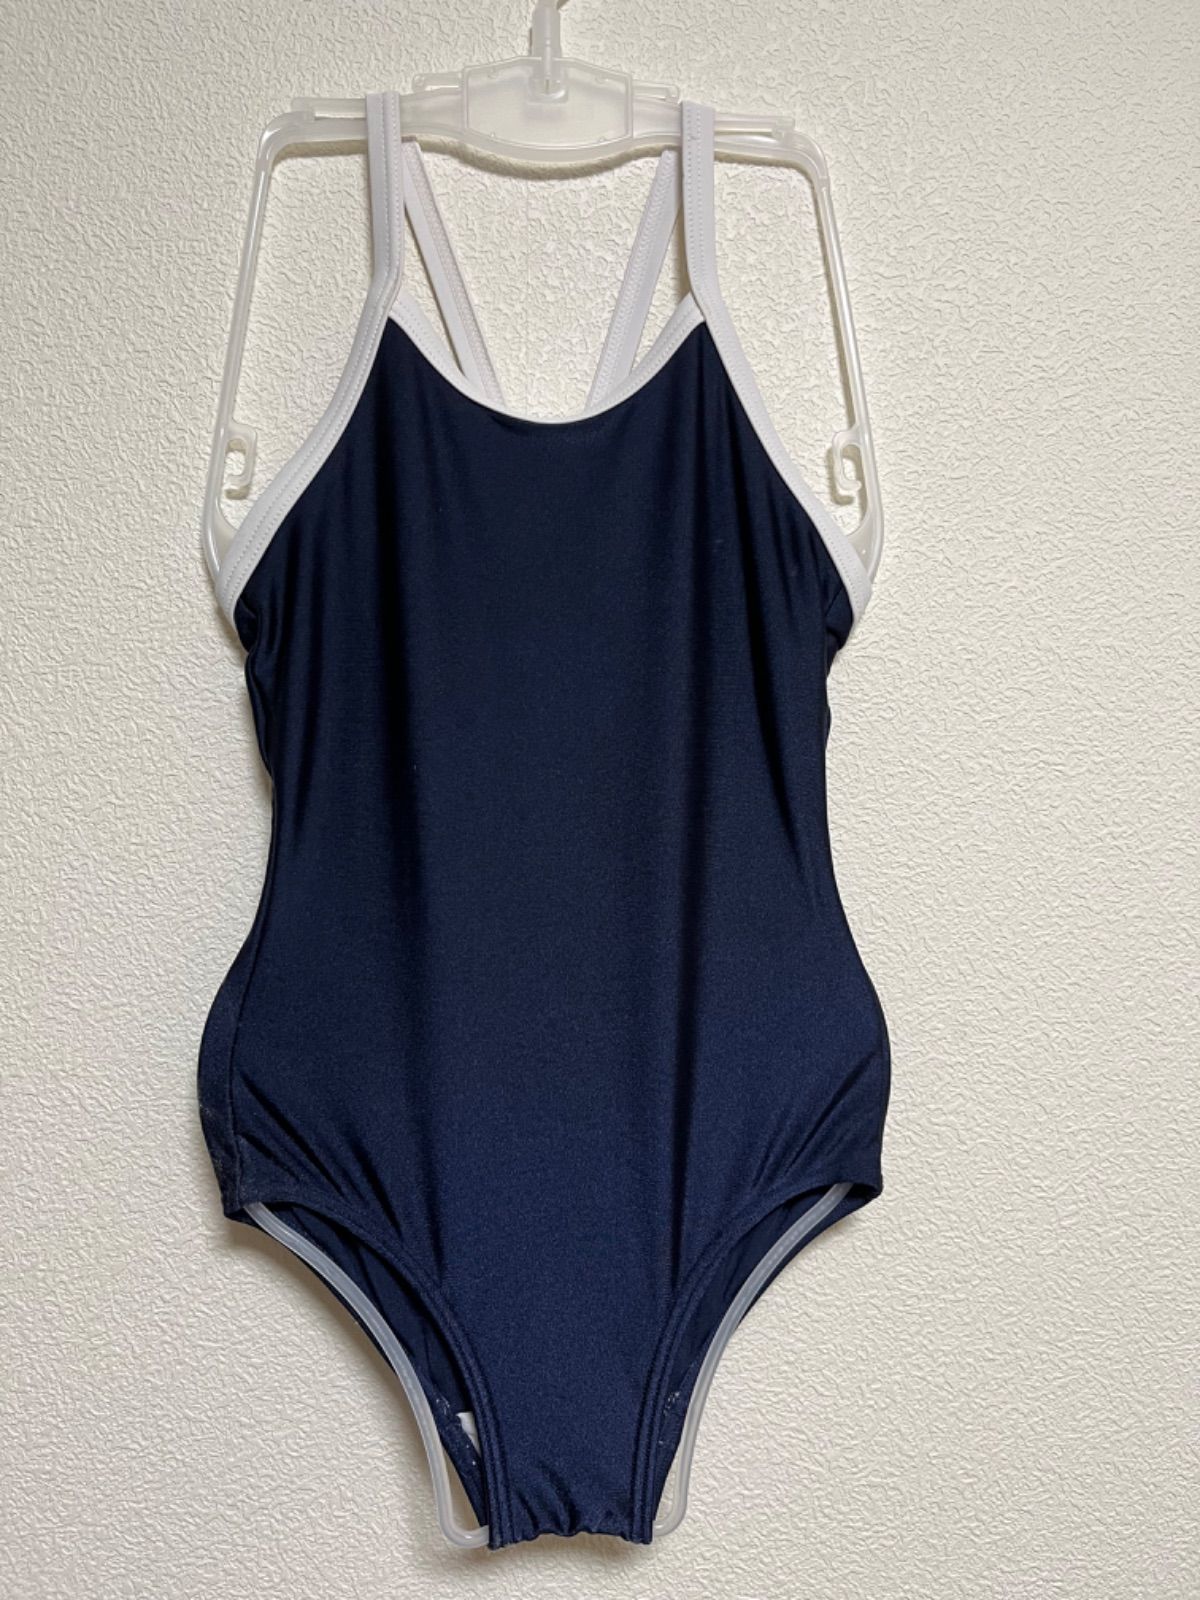 スクール水着 競泳タイプ 女の子 160 紺 カップ付き 白パイピング メルカリshops